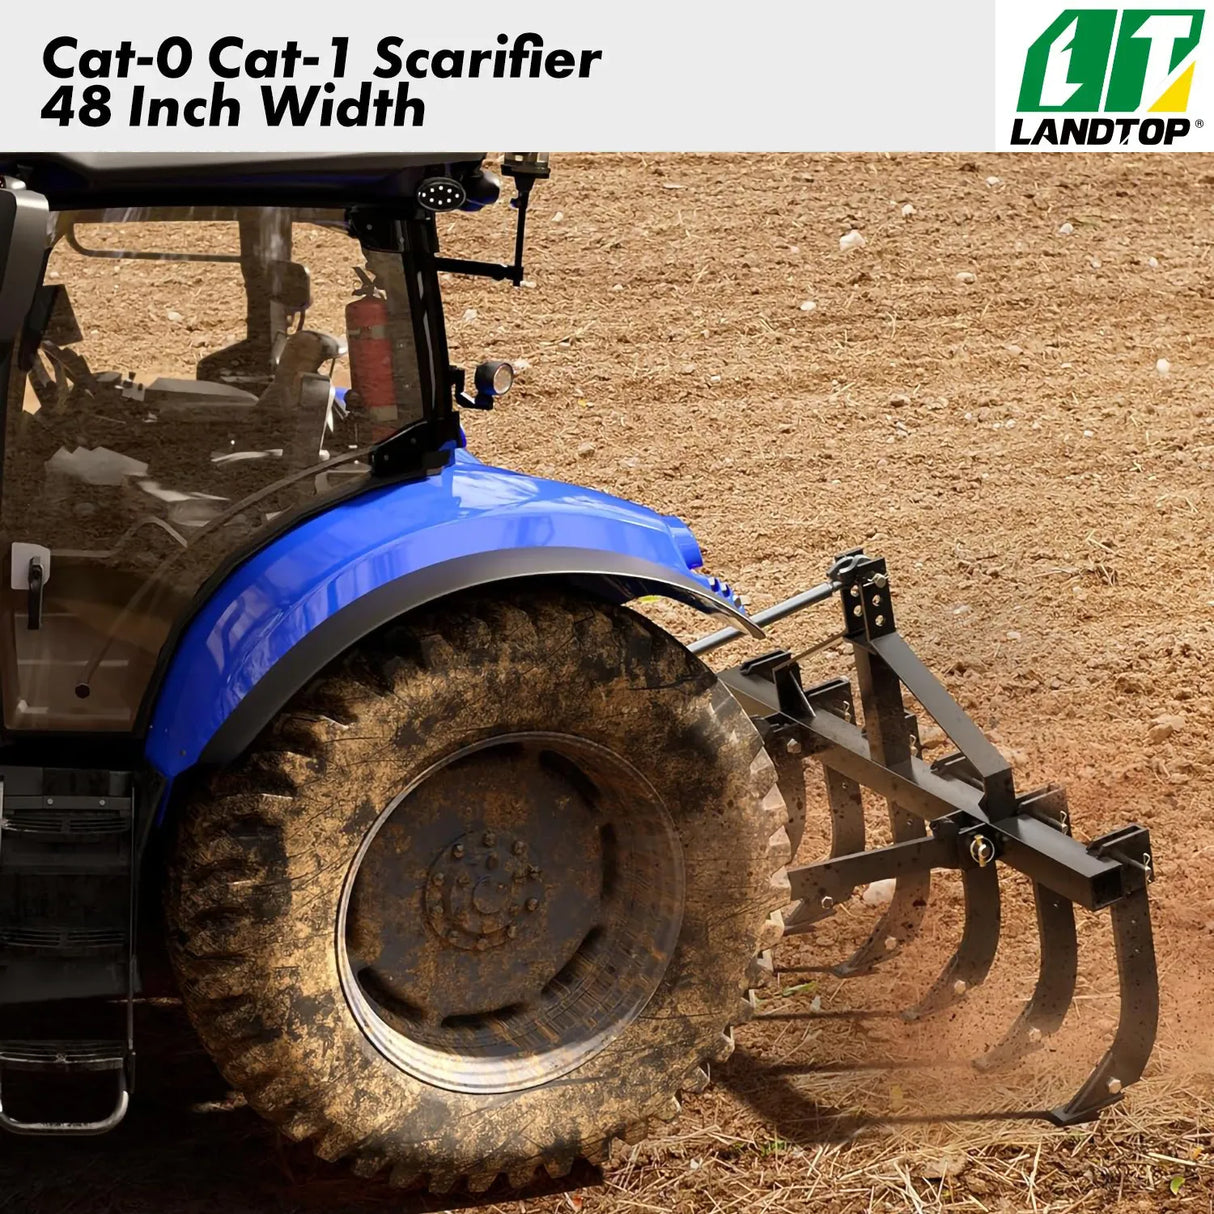 Chisel Plow Scarifier, Detachable Cultivator with 6 Scarifier Shank, 3 Point Scarifier for CAT-0 & CAT-1